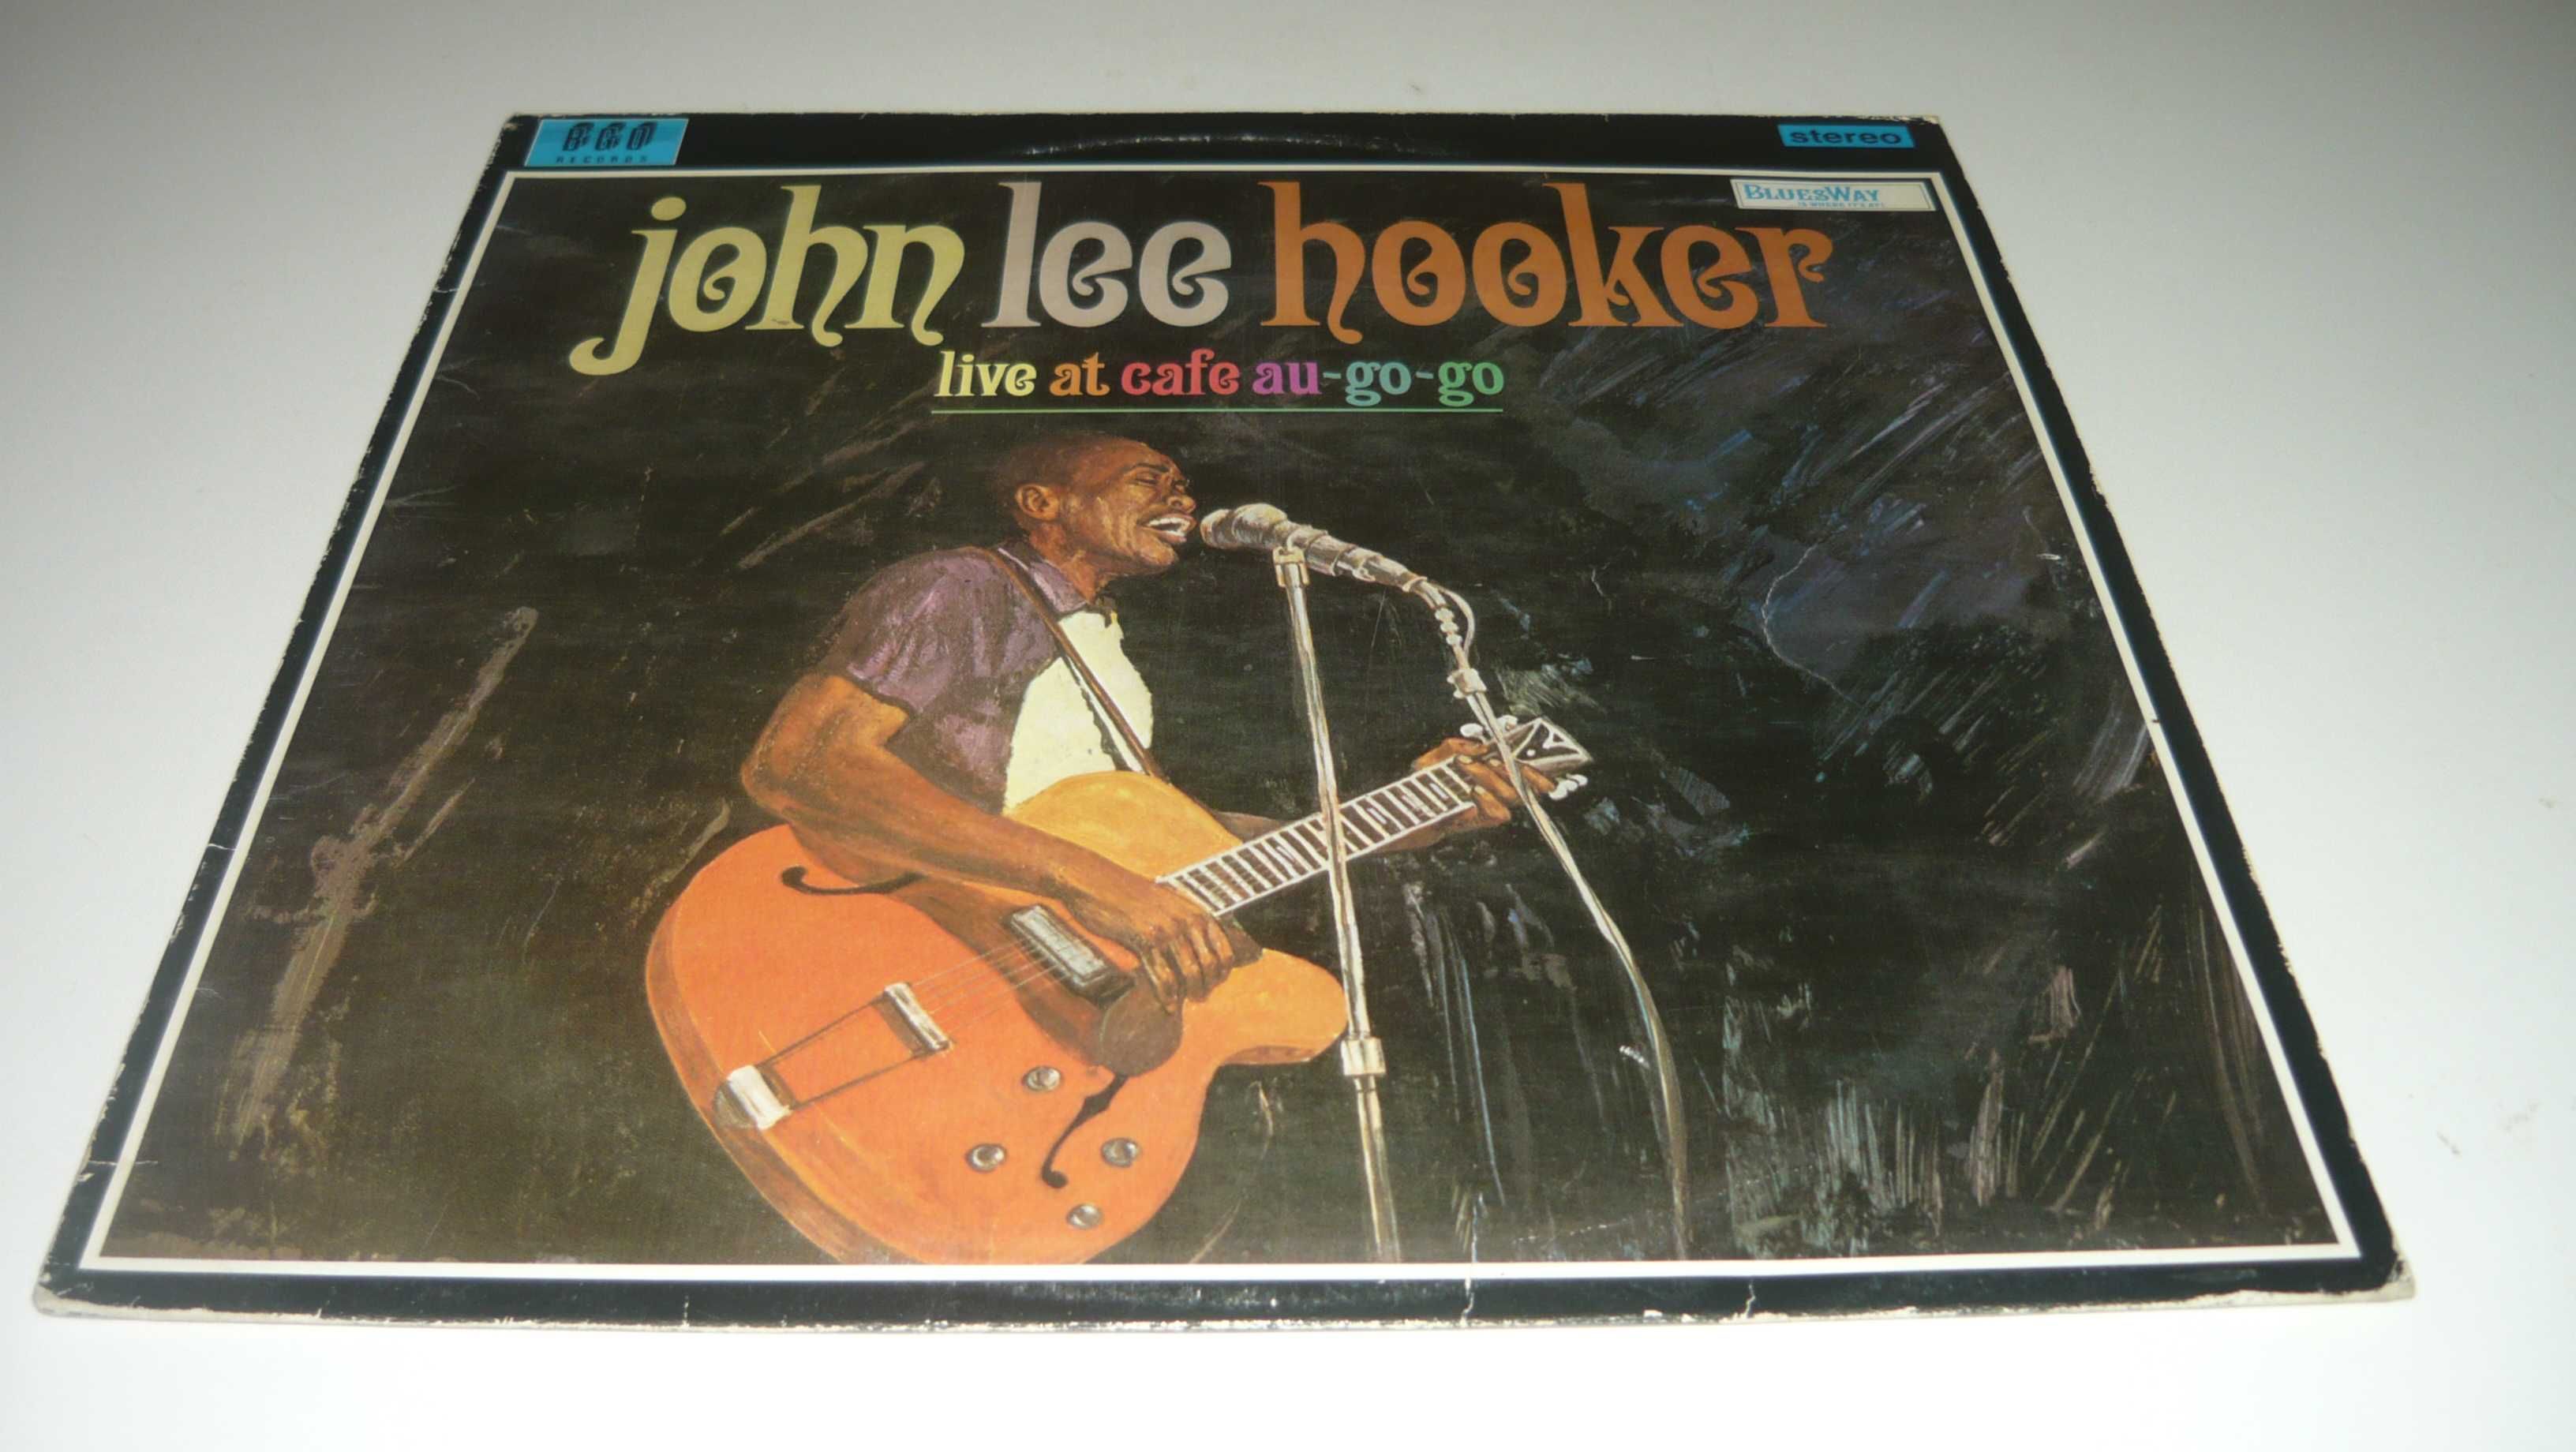 John Lee Hooker live at cafe au-go-go LP